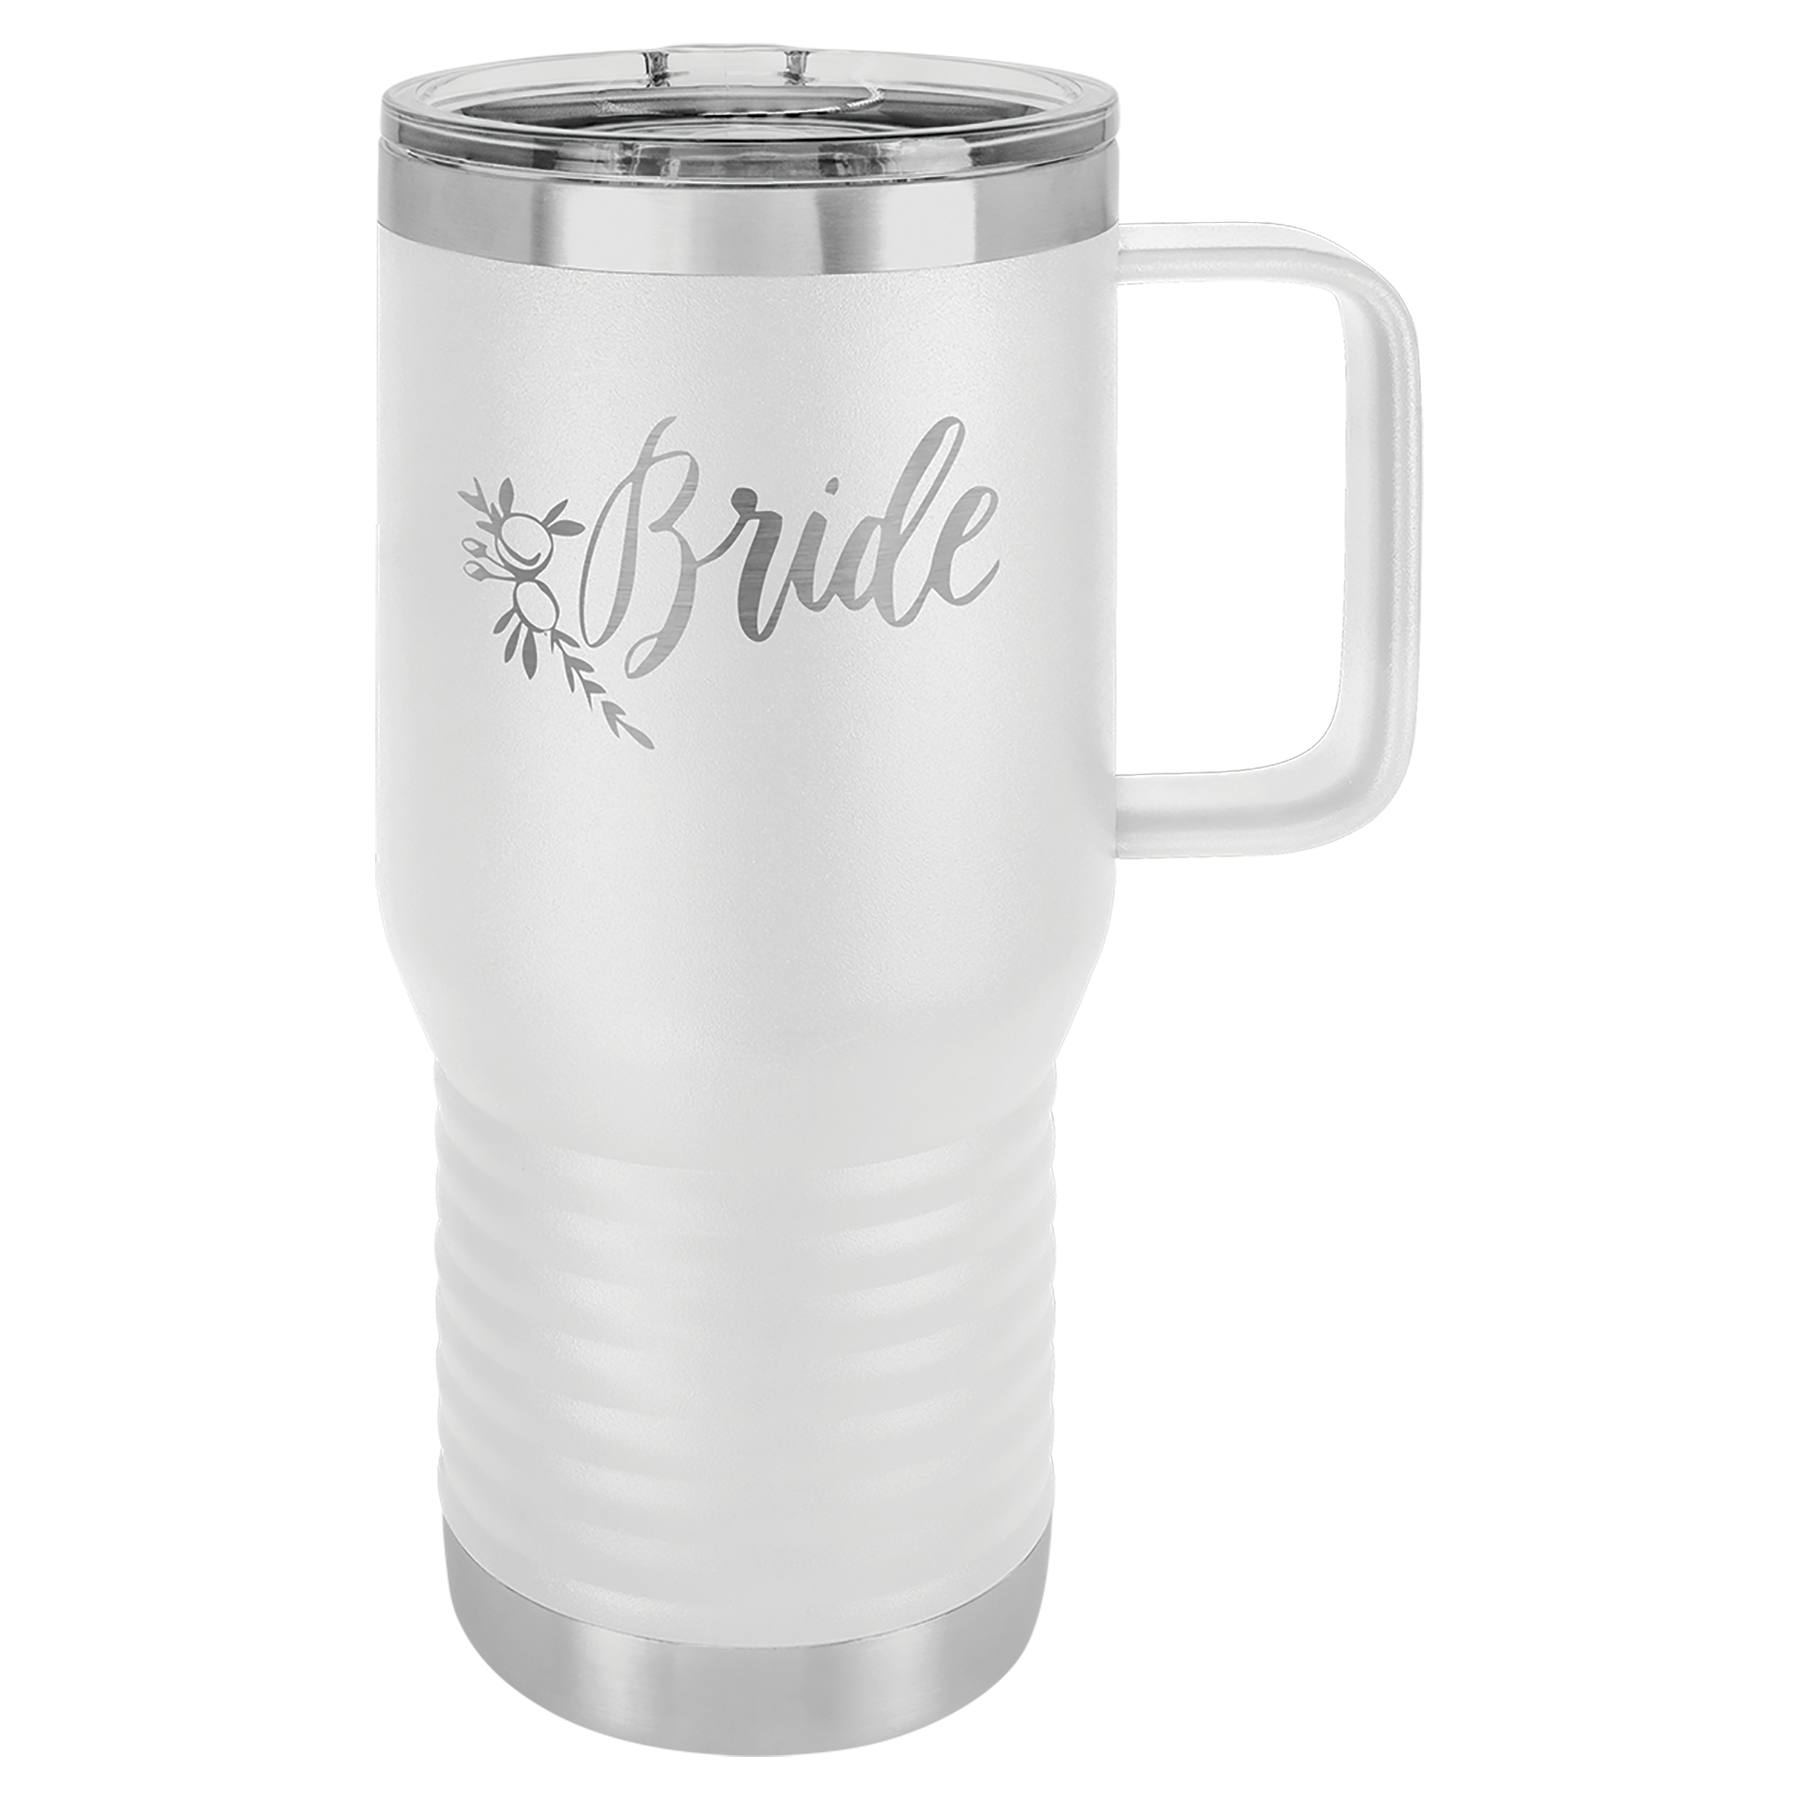 YETI Travel Mug 20 Oz Personalize With Handle Custom Engraved YETI Mug  Laser Etched Yeti Gift Coffee Mug 20oz Company Logo Gift 